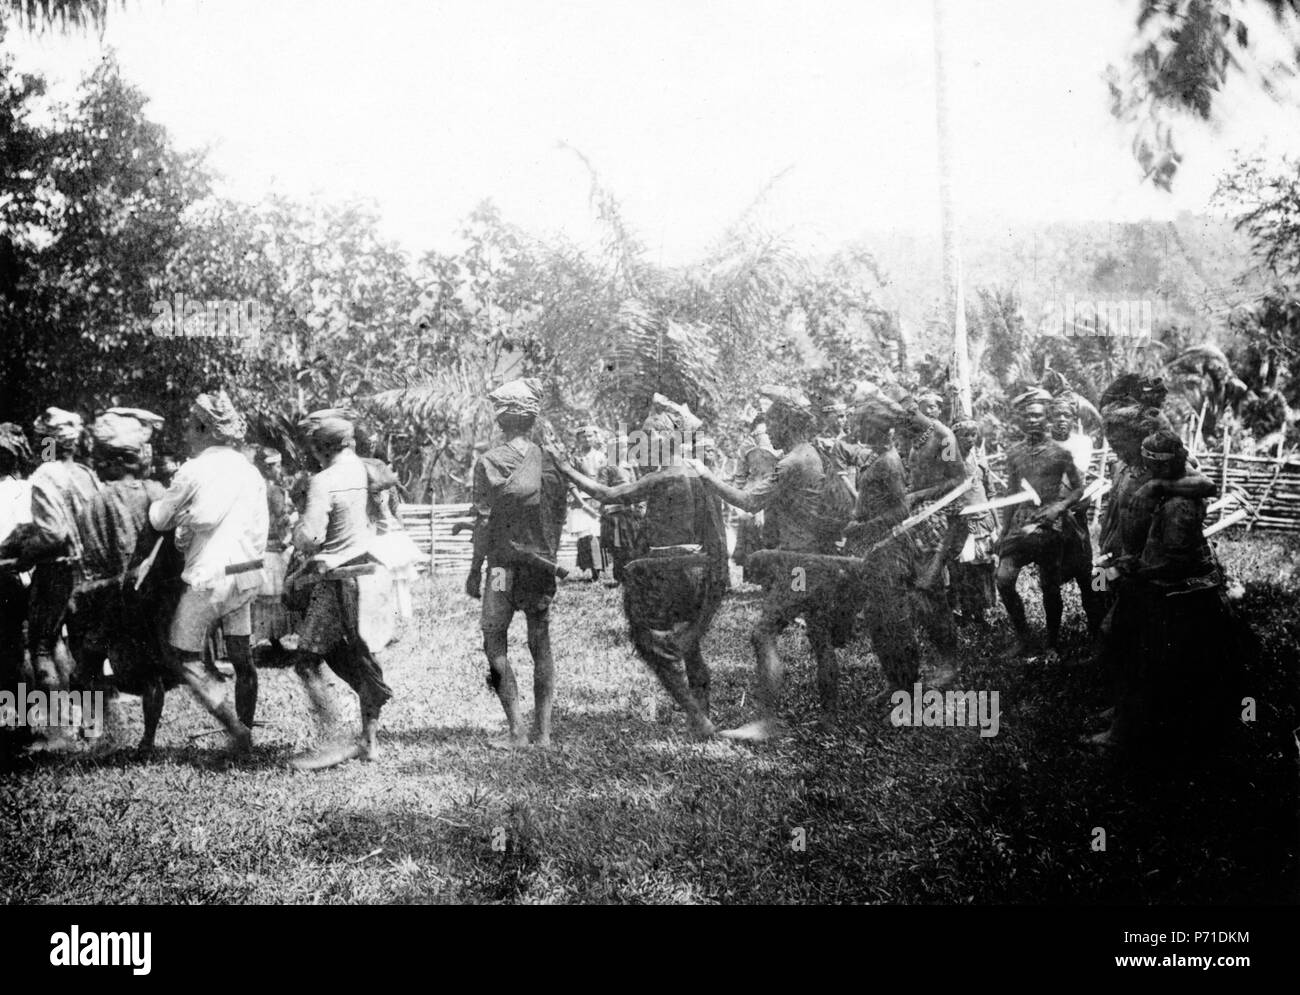 43 Moraego-dans vid pasanggrahan. Kulawi, Sulawesi. Indonesien - SMVK - 010733c Stock Photo